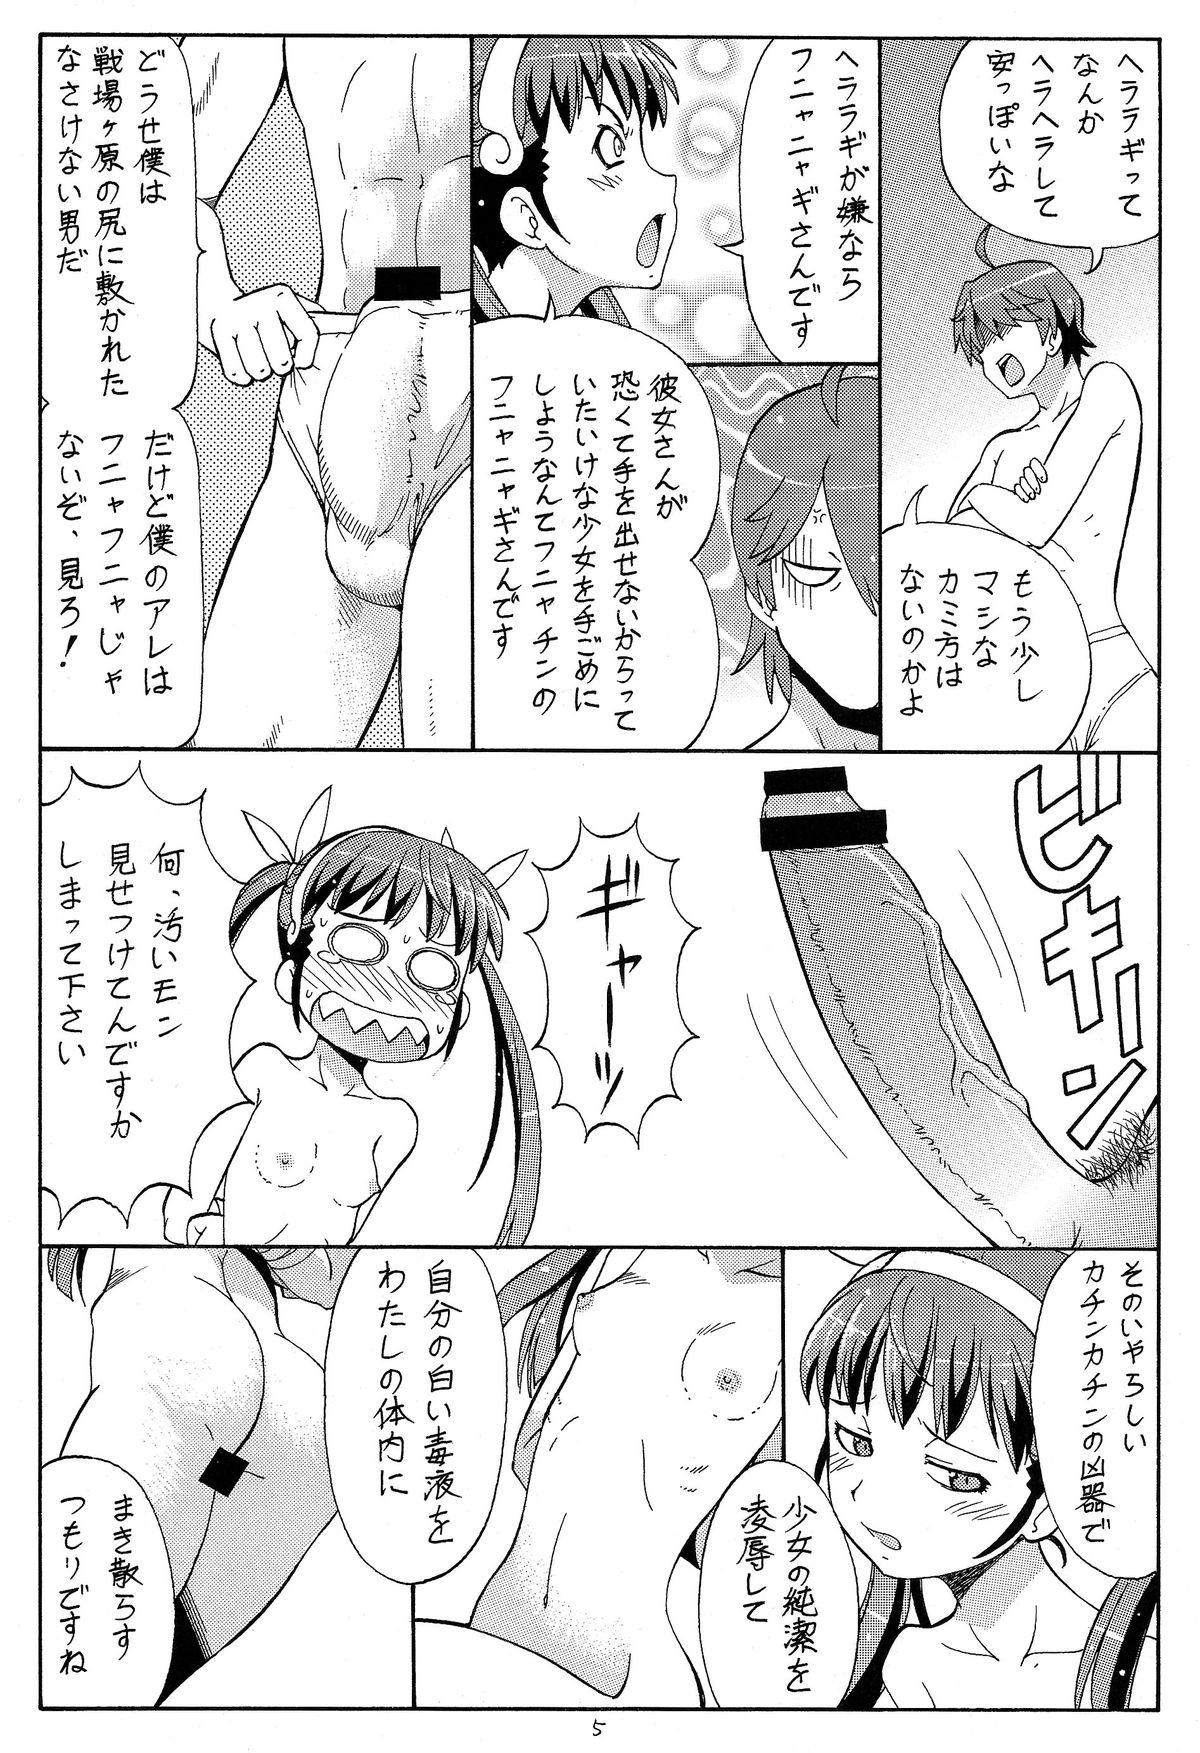 High Definition Hito ni Hakanai to Kaite "Araragi" to Yomu 4 - Bakemonogatari Cavala - Page 7